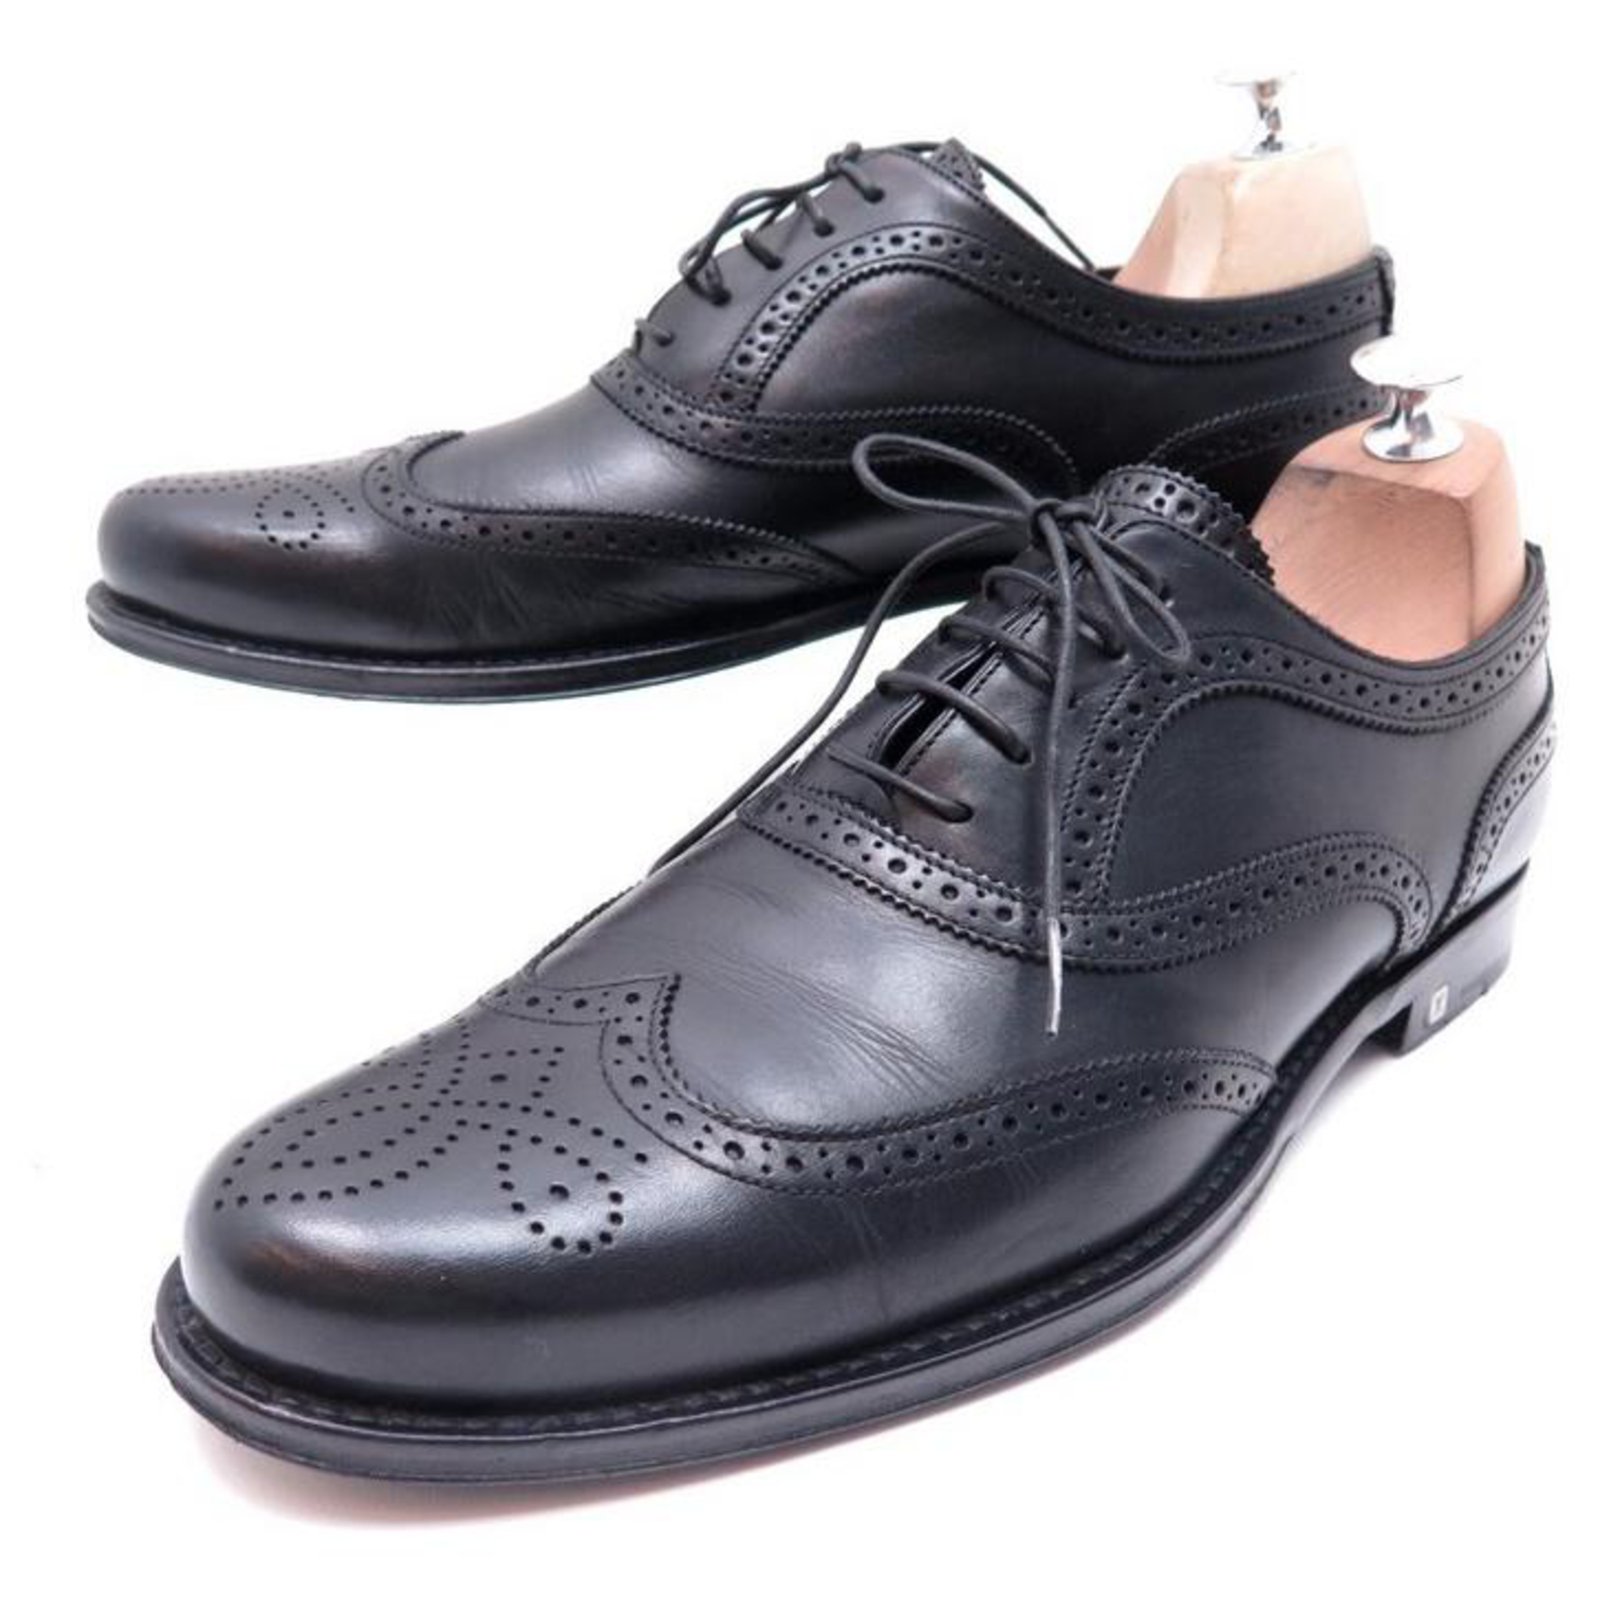 Louis Vuitton Black Leather Oxfords Shoes